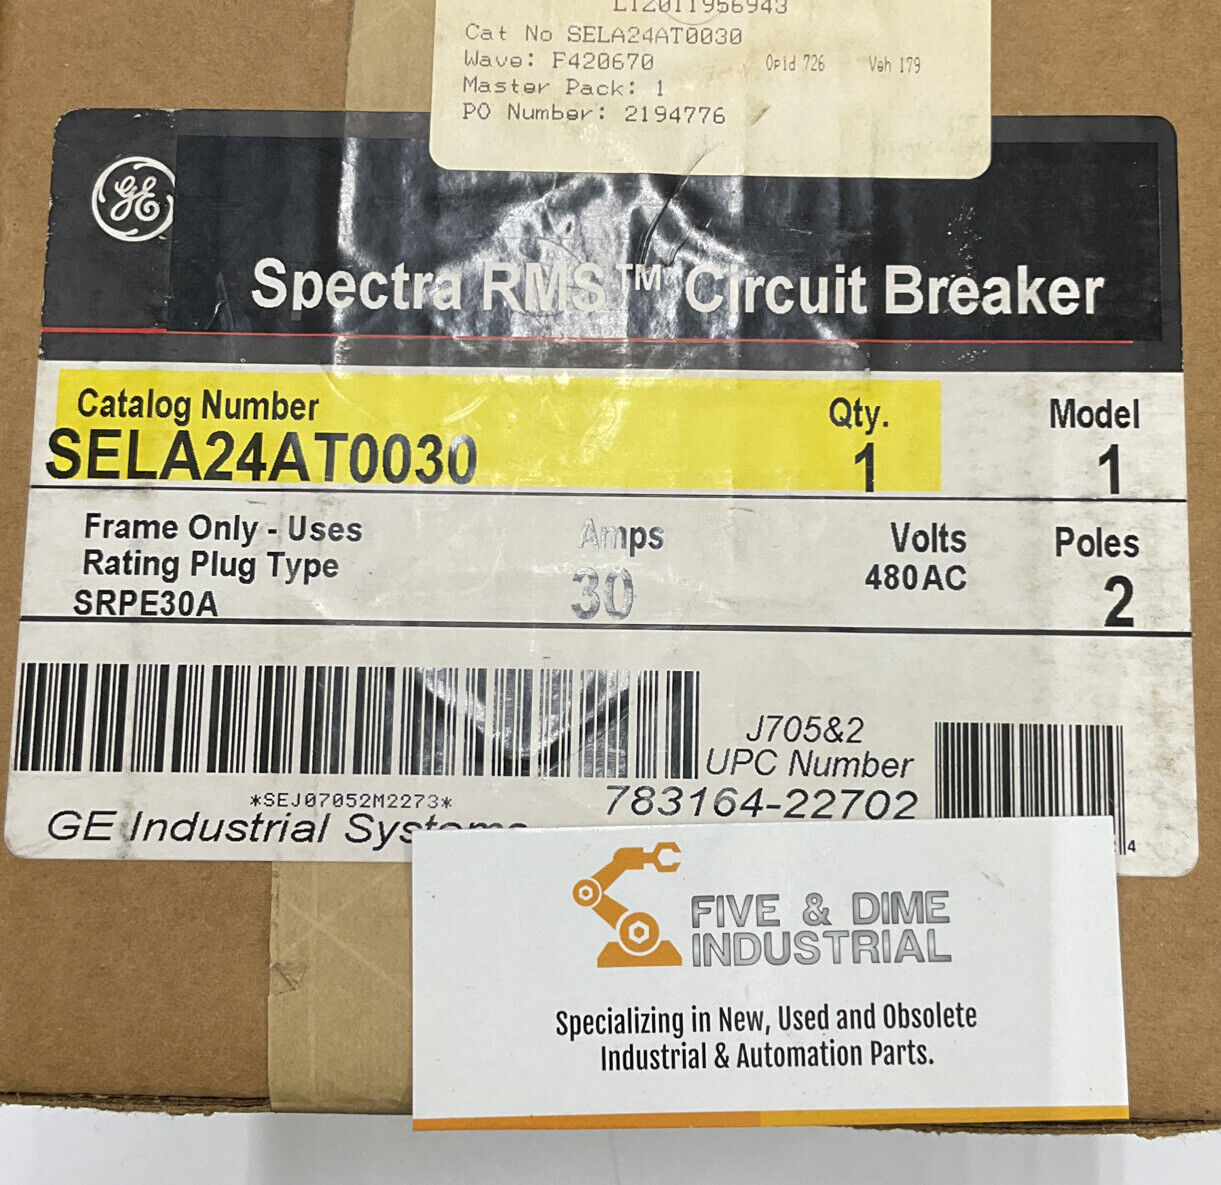 GE Spectra RMS Sela 24AT0030 2 Pole 480V 30 Amp Circuit Breaker (OV110)